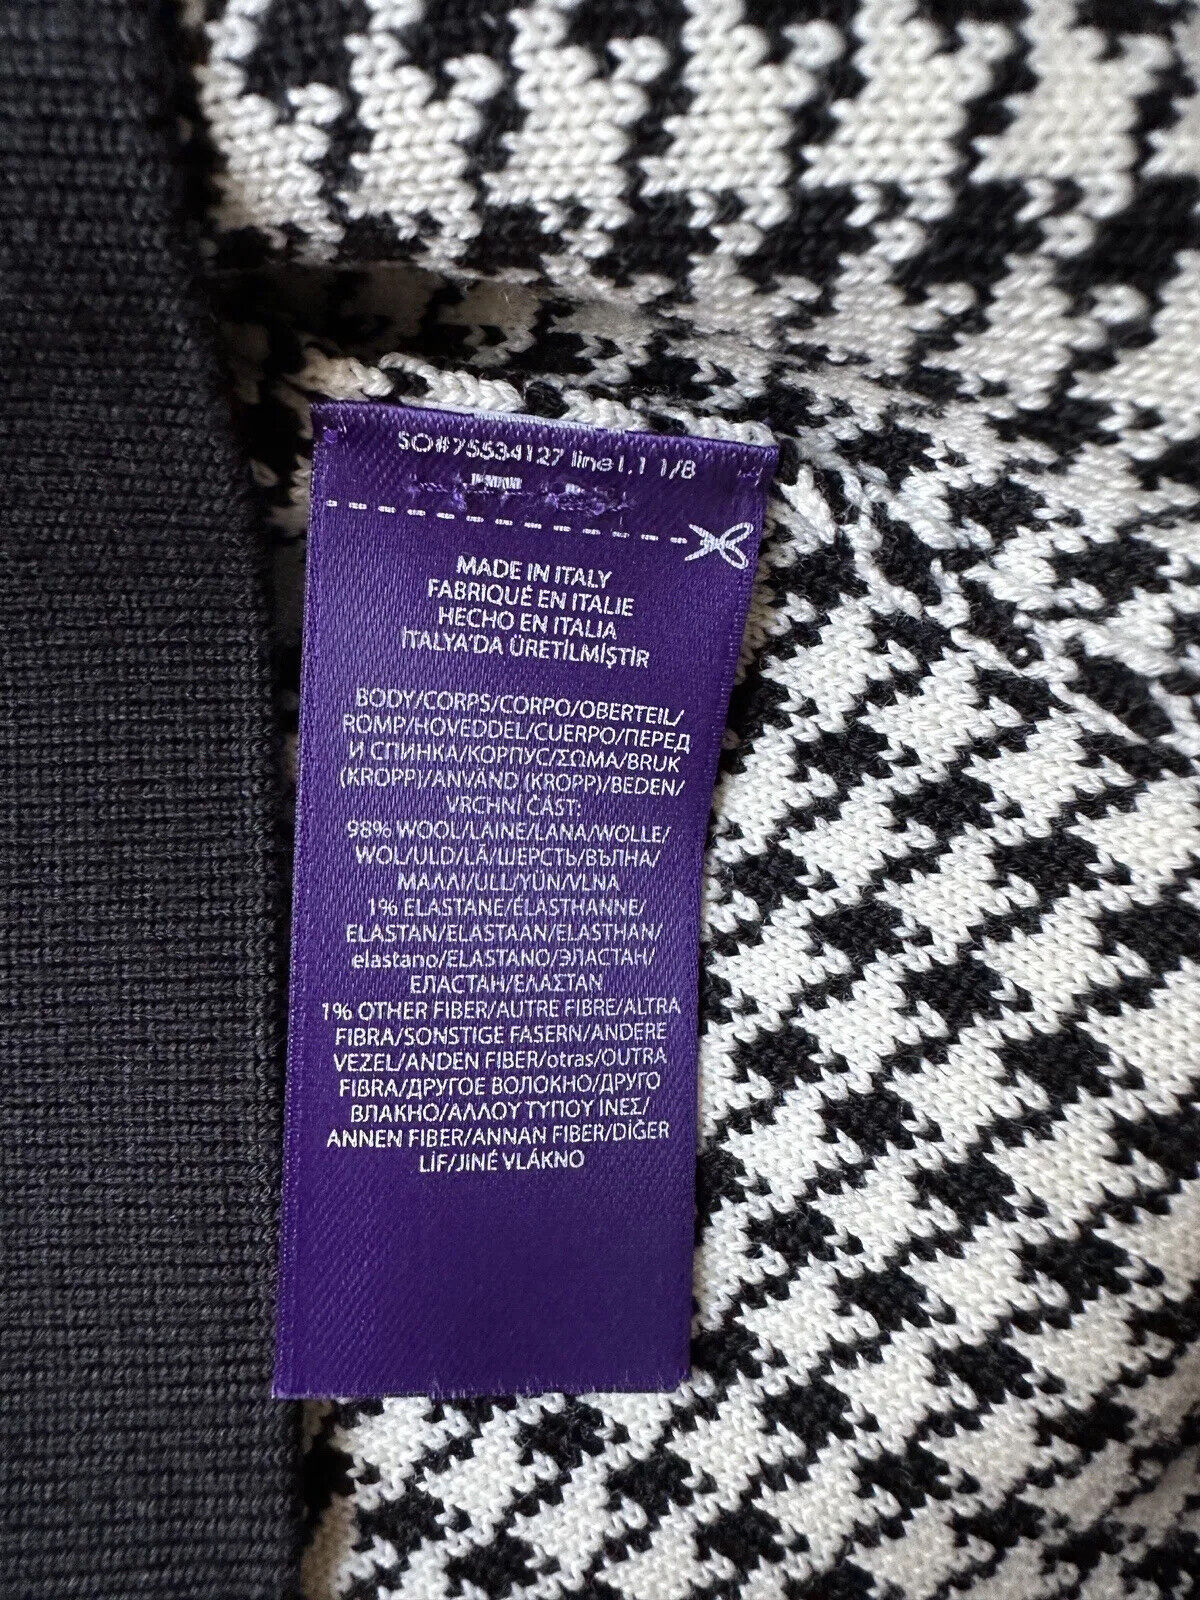 NWT $1690 Ralph Lauren Purple Label Черный шерстяной кардиган в ломаную клетку, маленькая Италия 